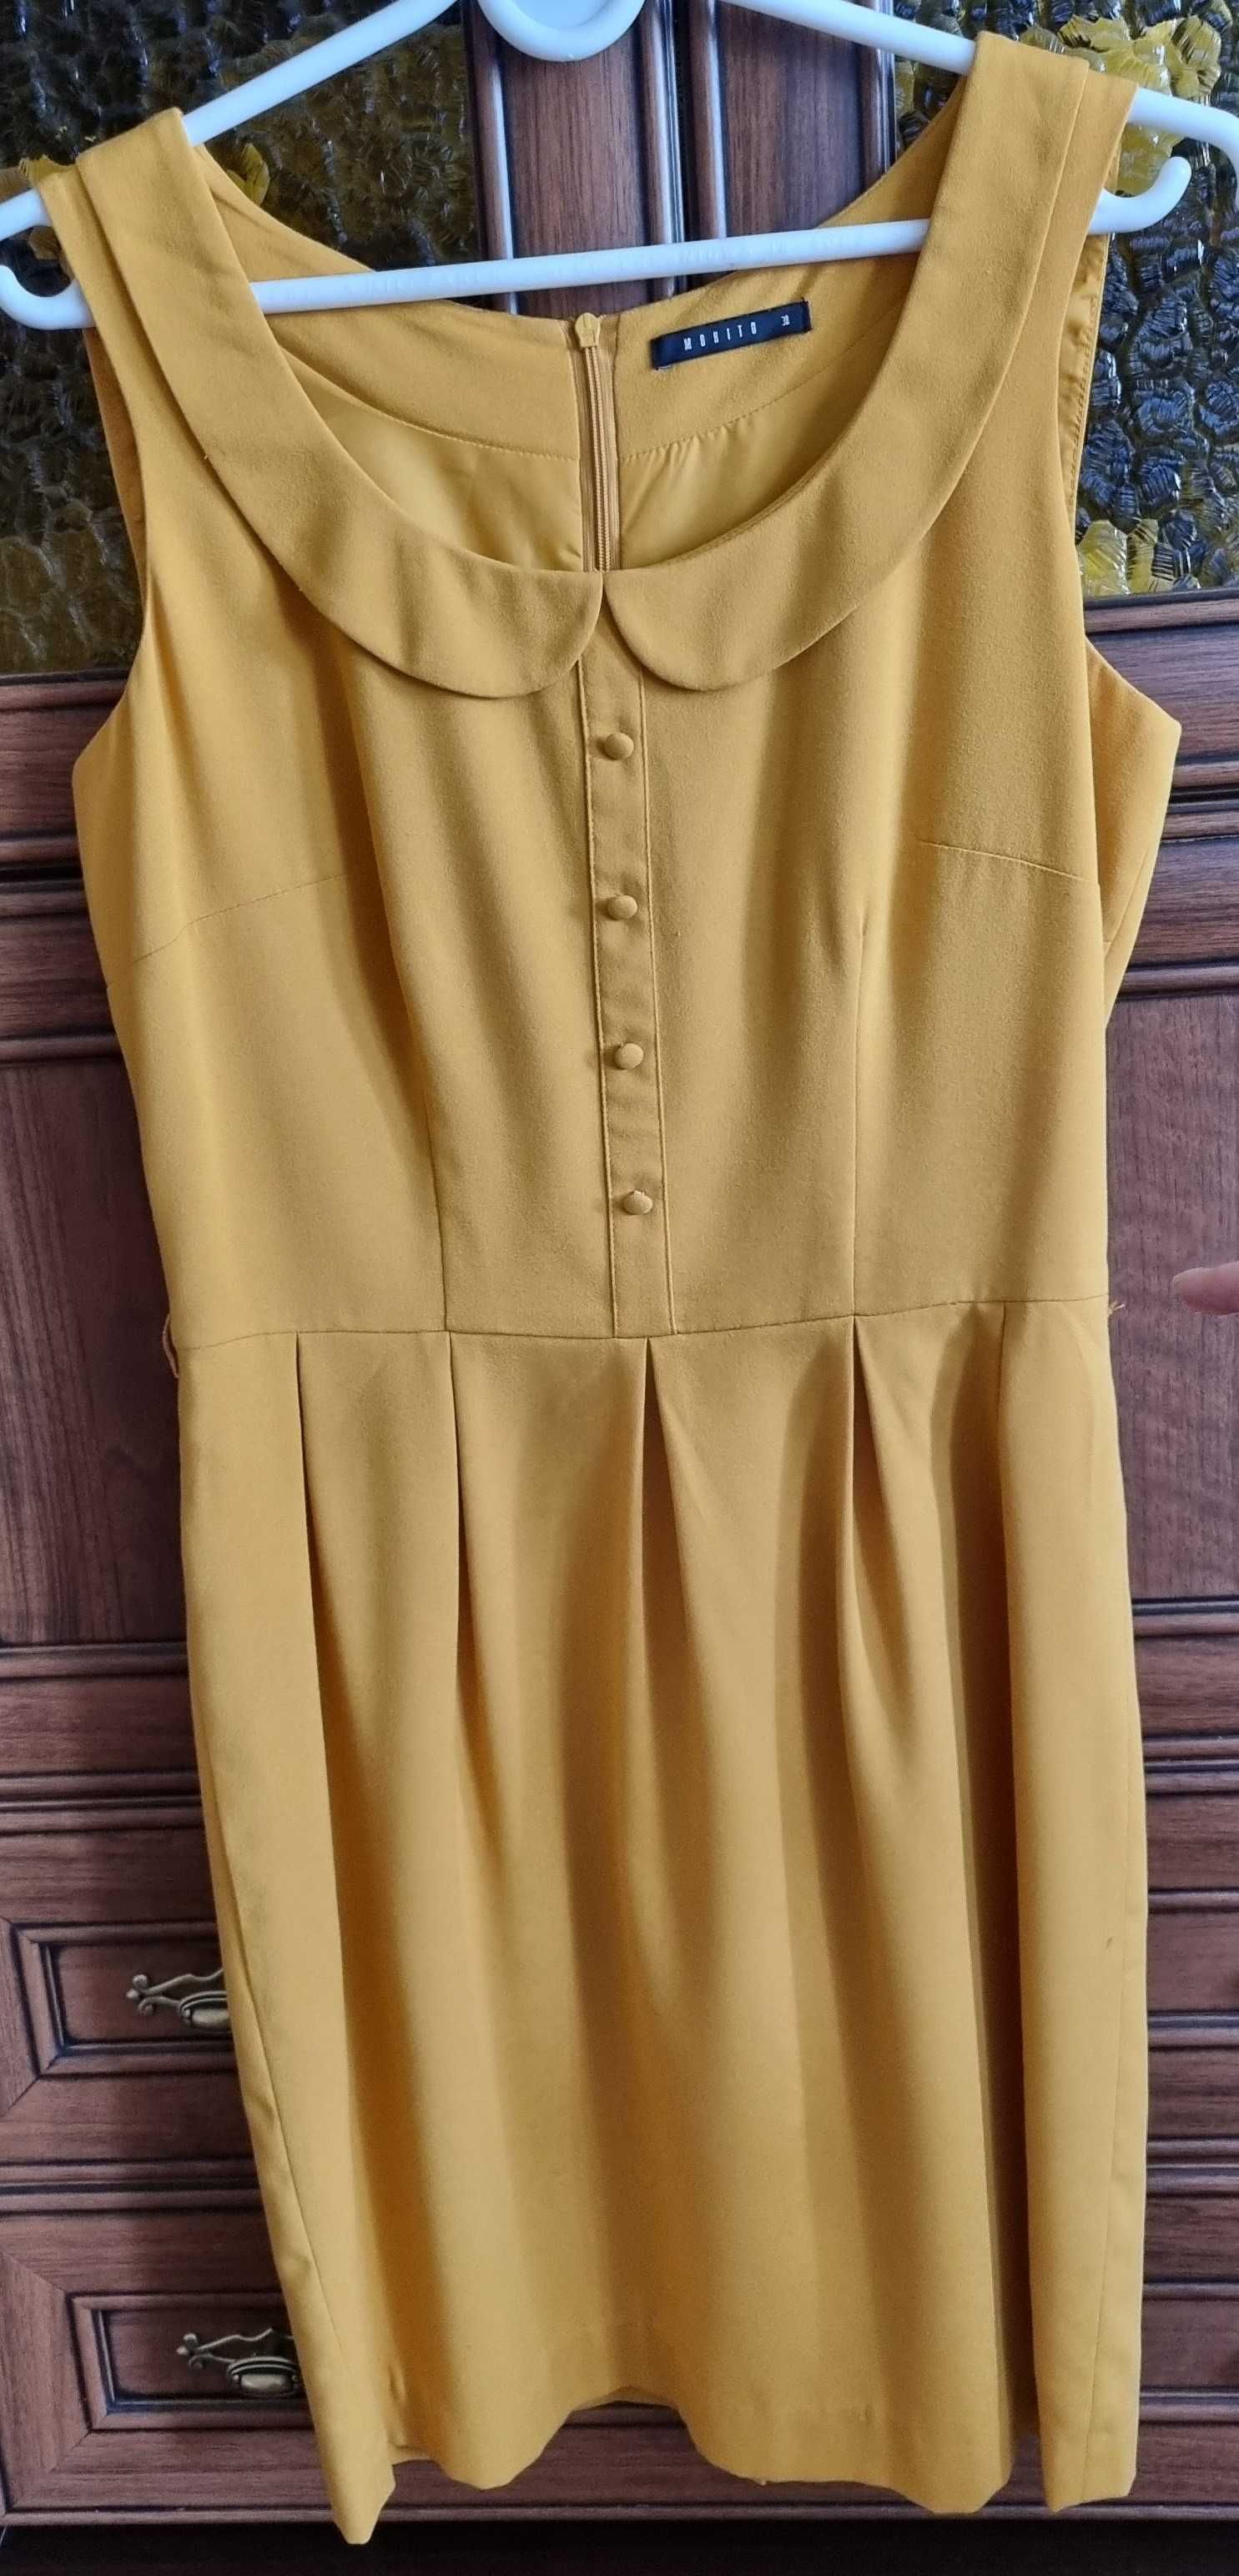 Sprzedam sukienkę w piaskowo-żółtym kolorze. Założona max 2x